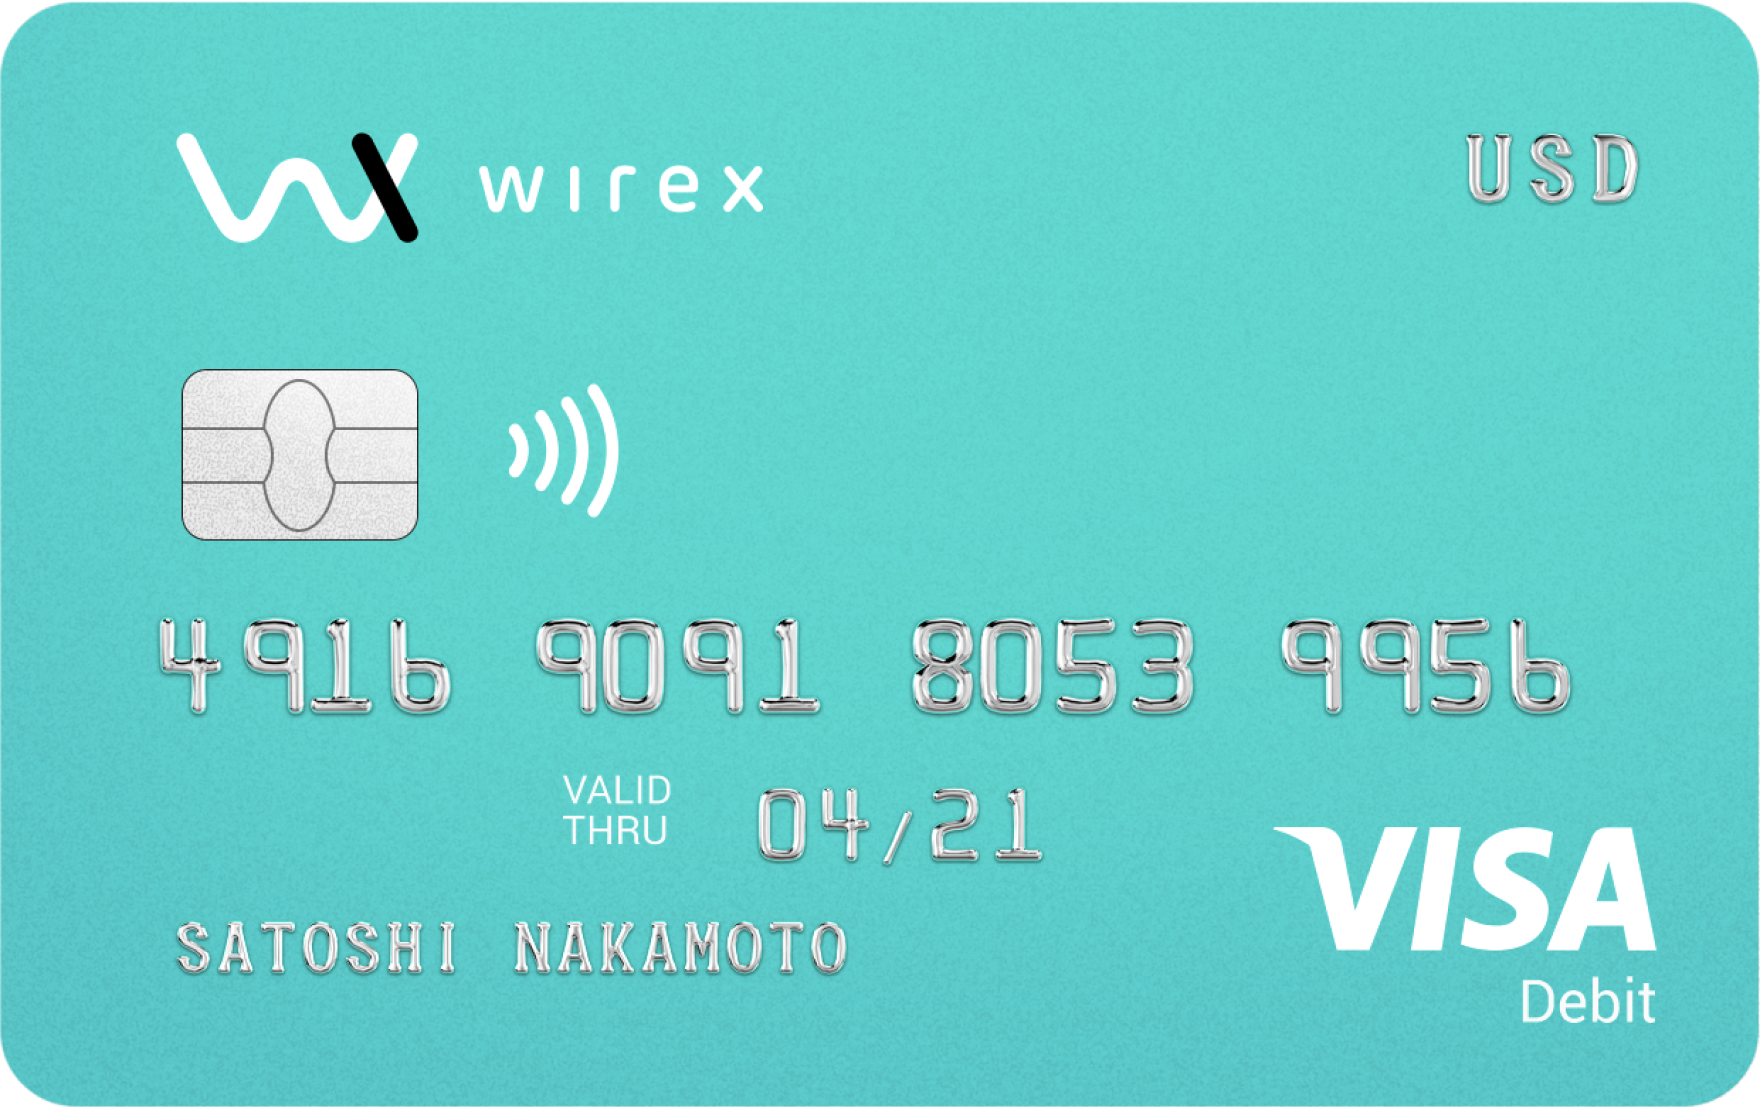 ❗❗ La tarjeta VISA WIREX se puede cargar desde BTC, LTC, XR o ETH ...